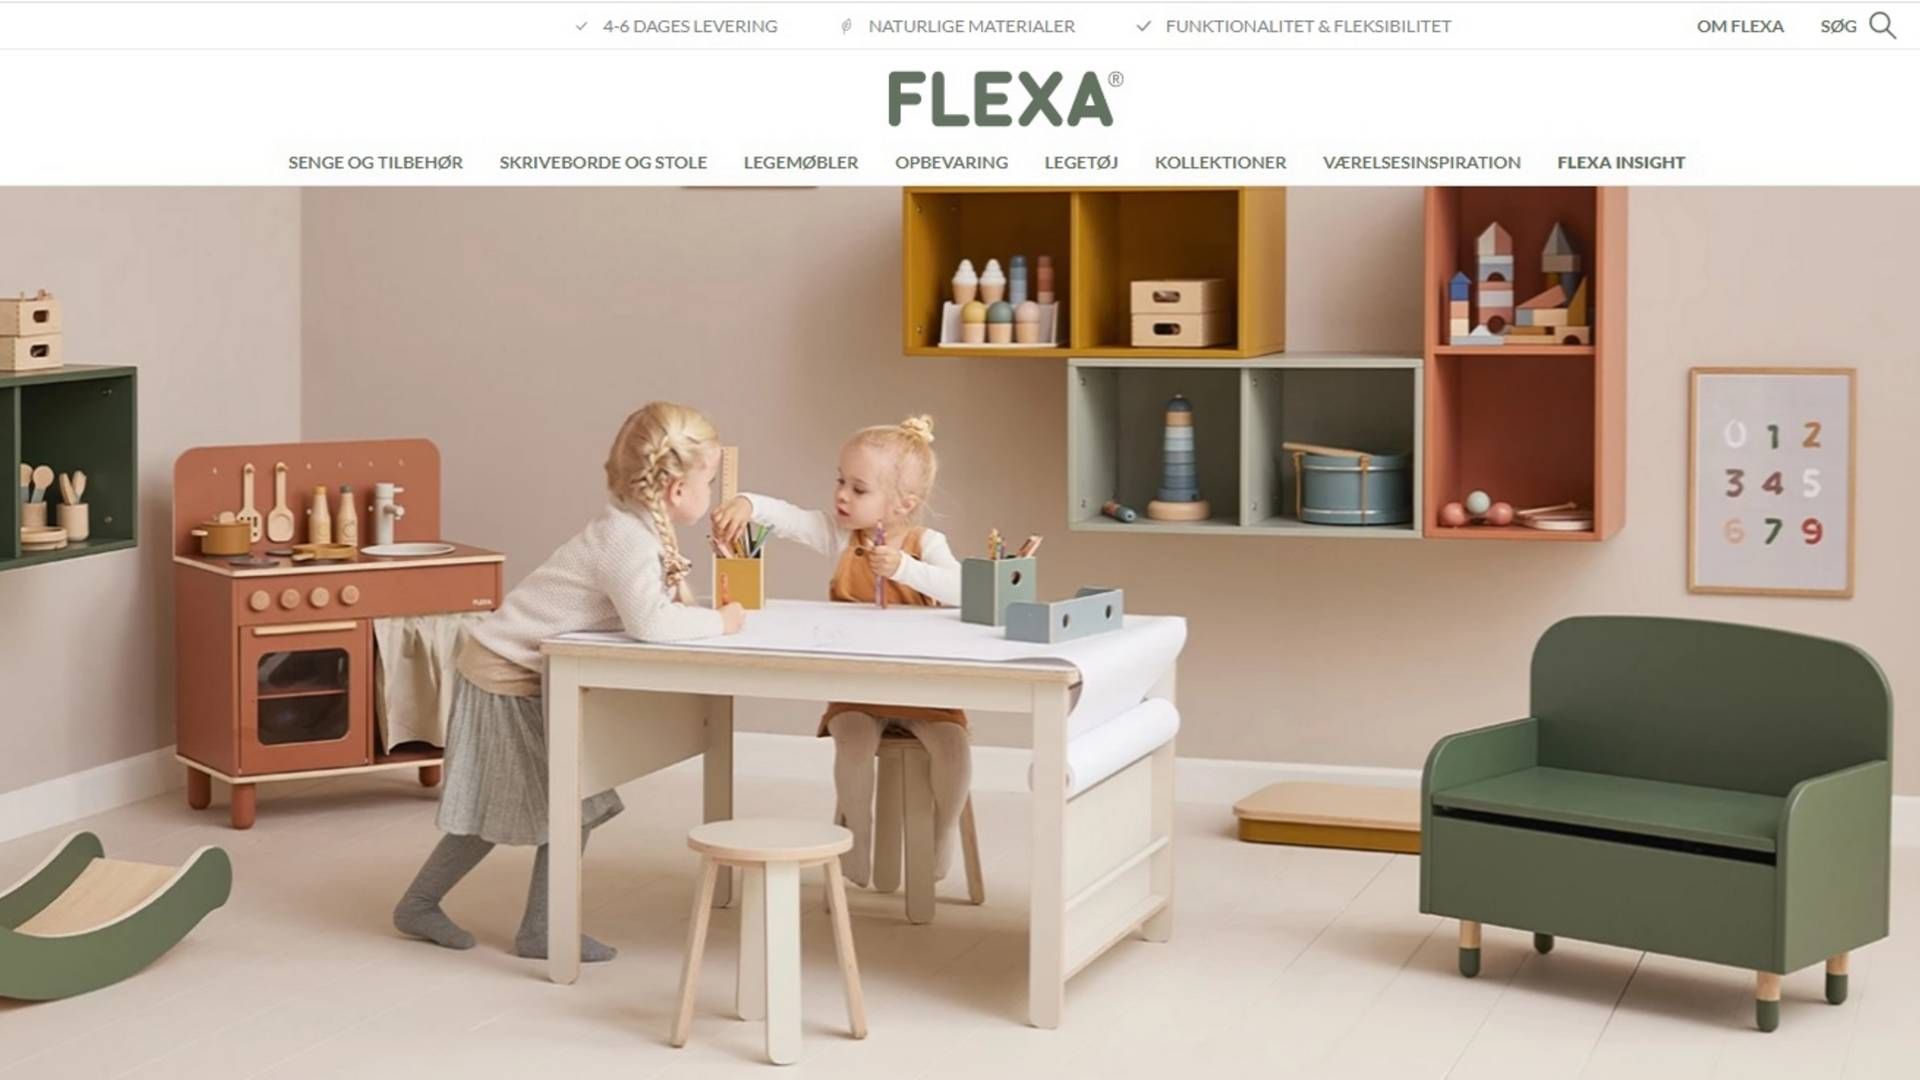 Flexa producerer og sælger børnemøbler og legetøj | Foto: Screenshot/Flexa